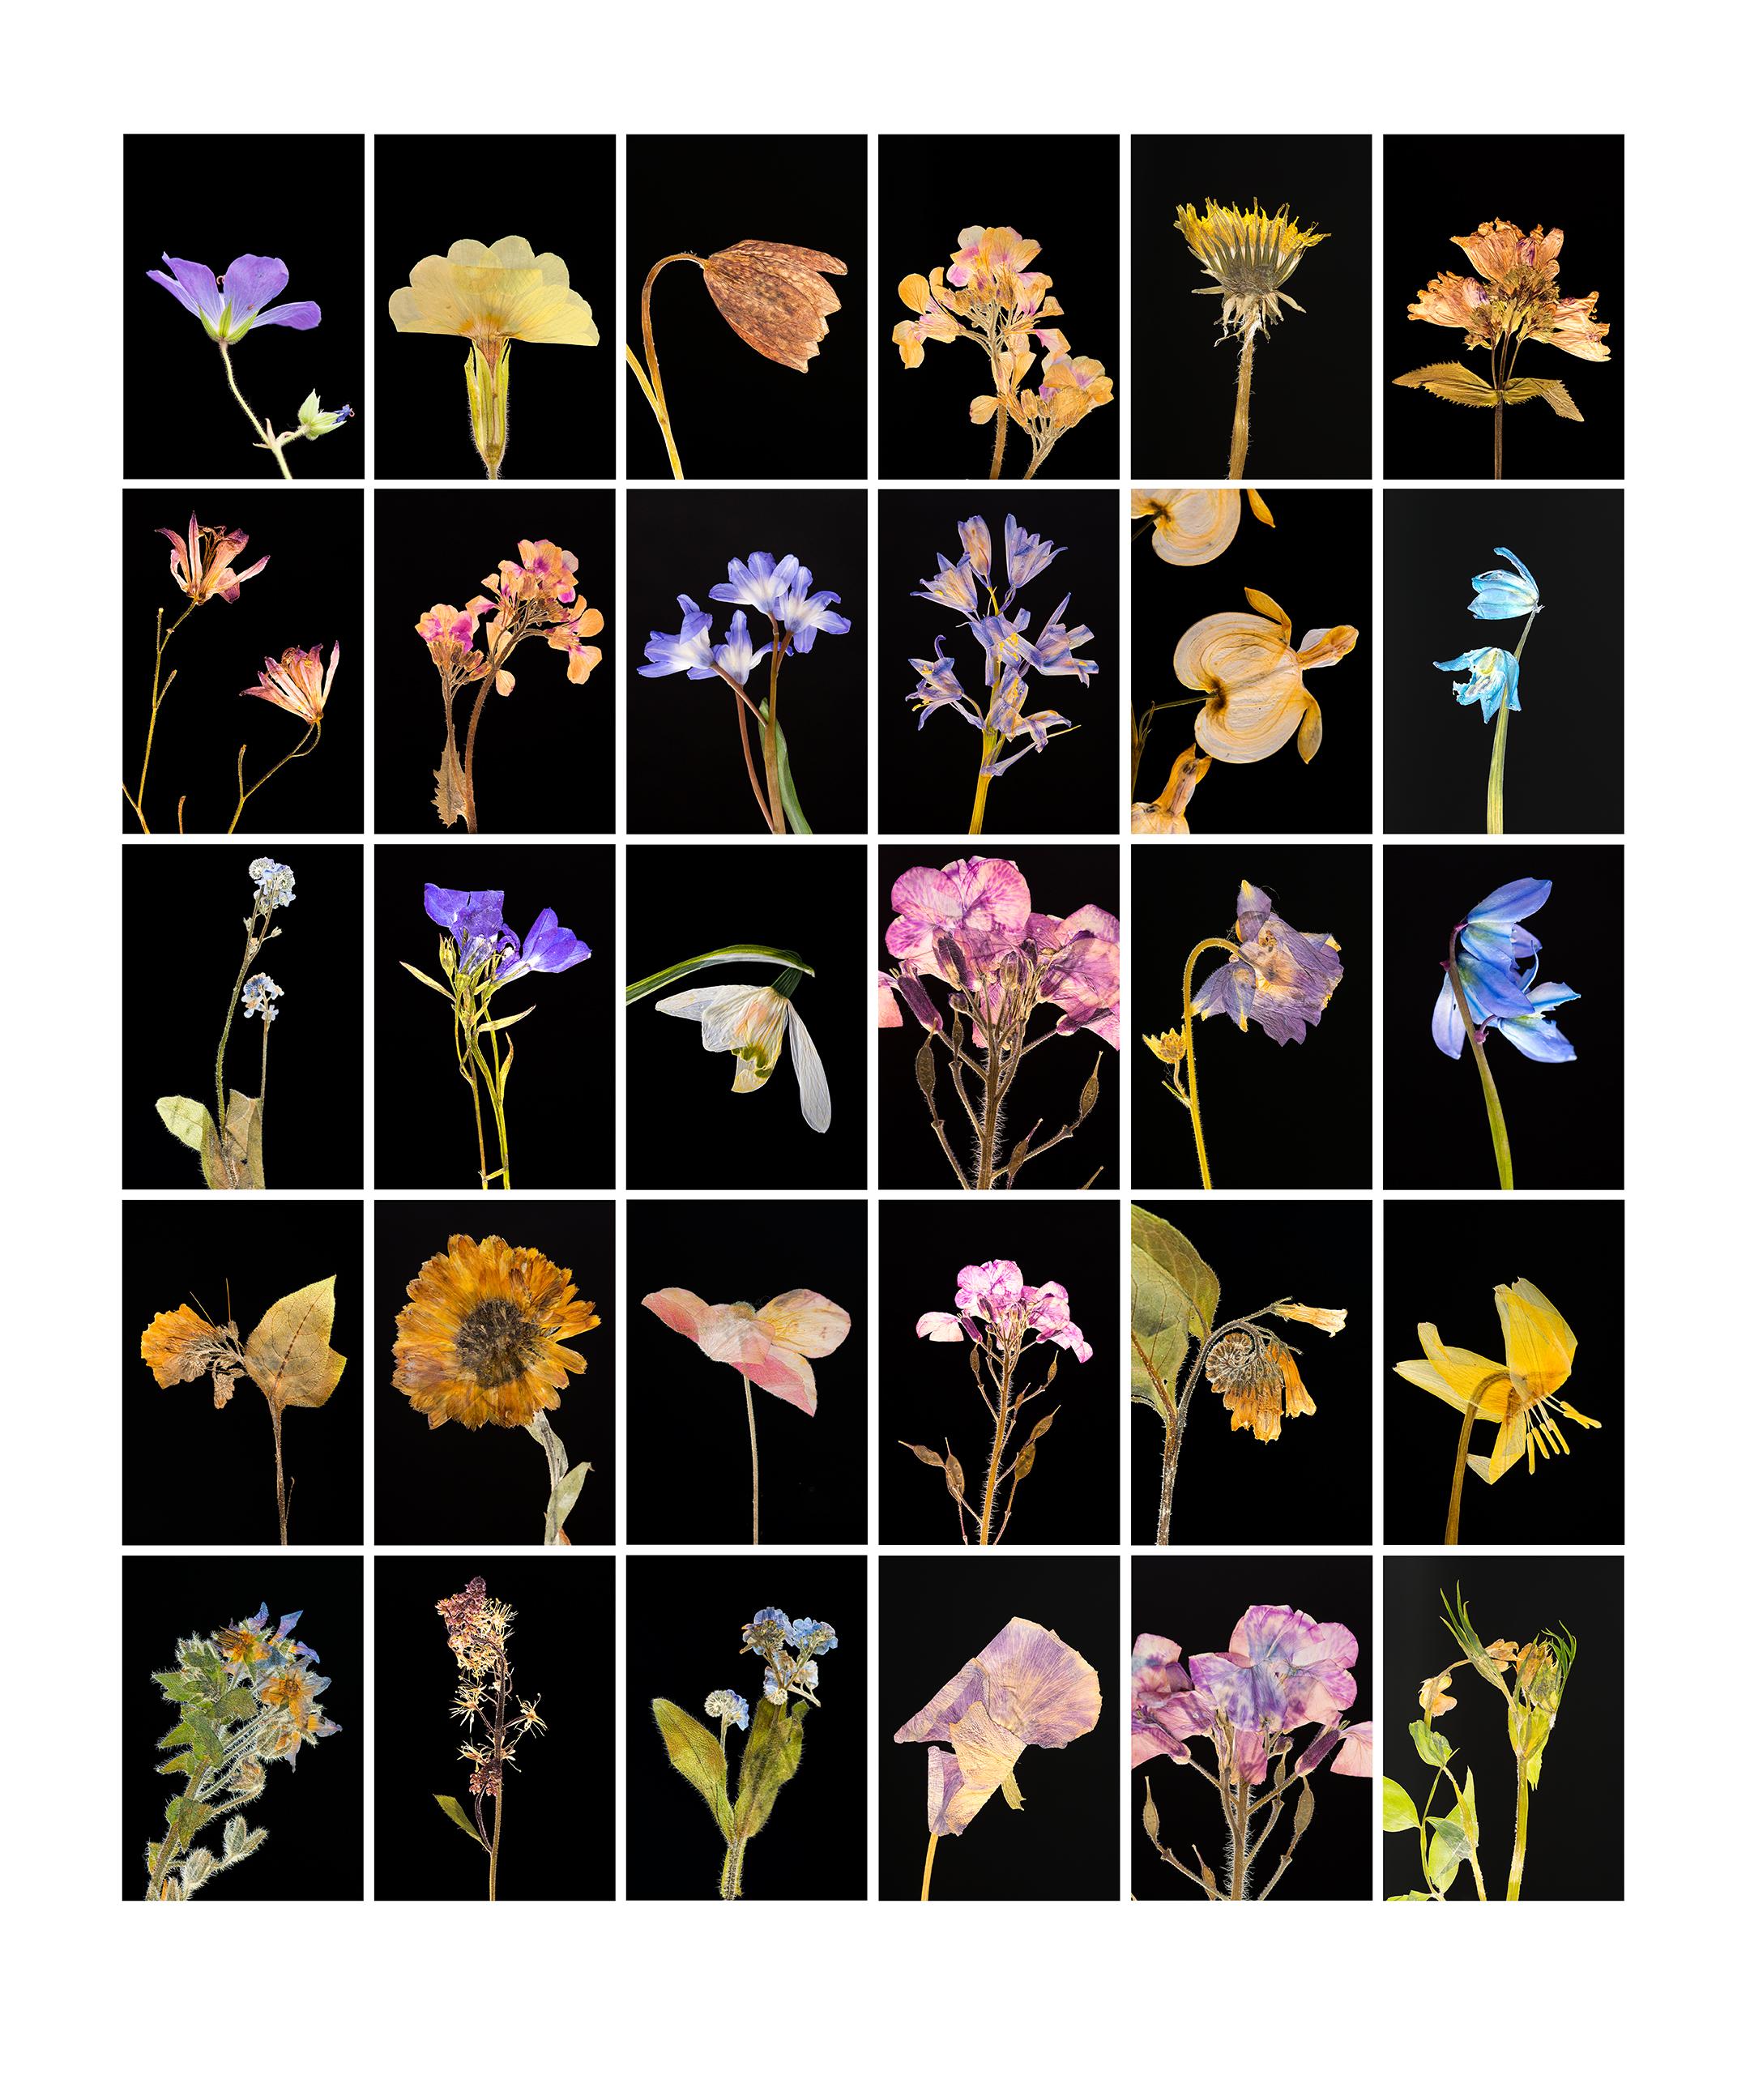 Still-Life Photograph Martin Parker - Geranium - Impressions photographiques botaniques couleur